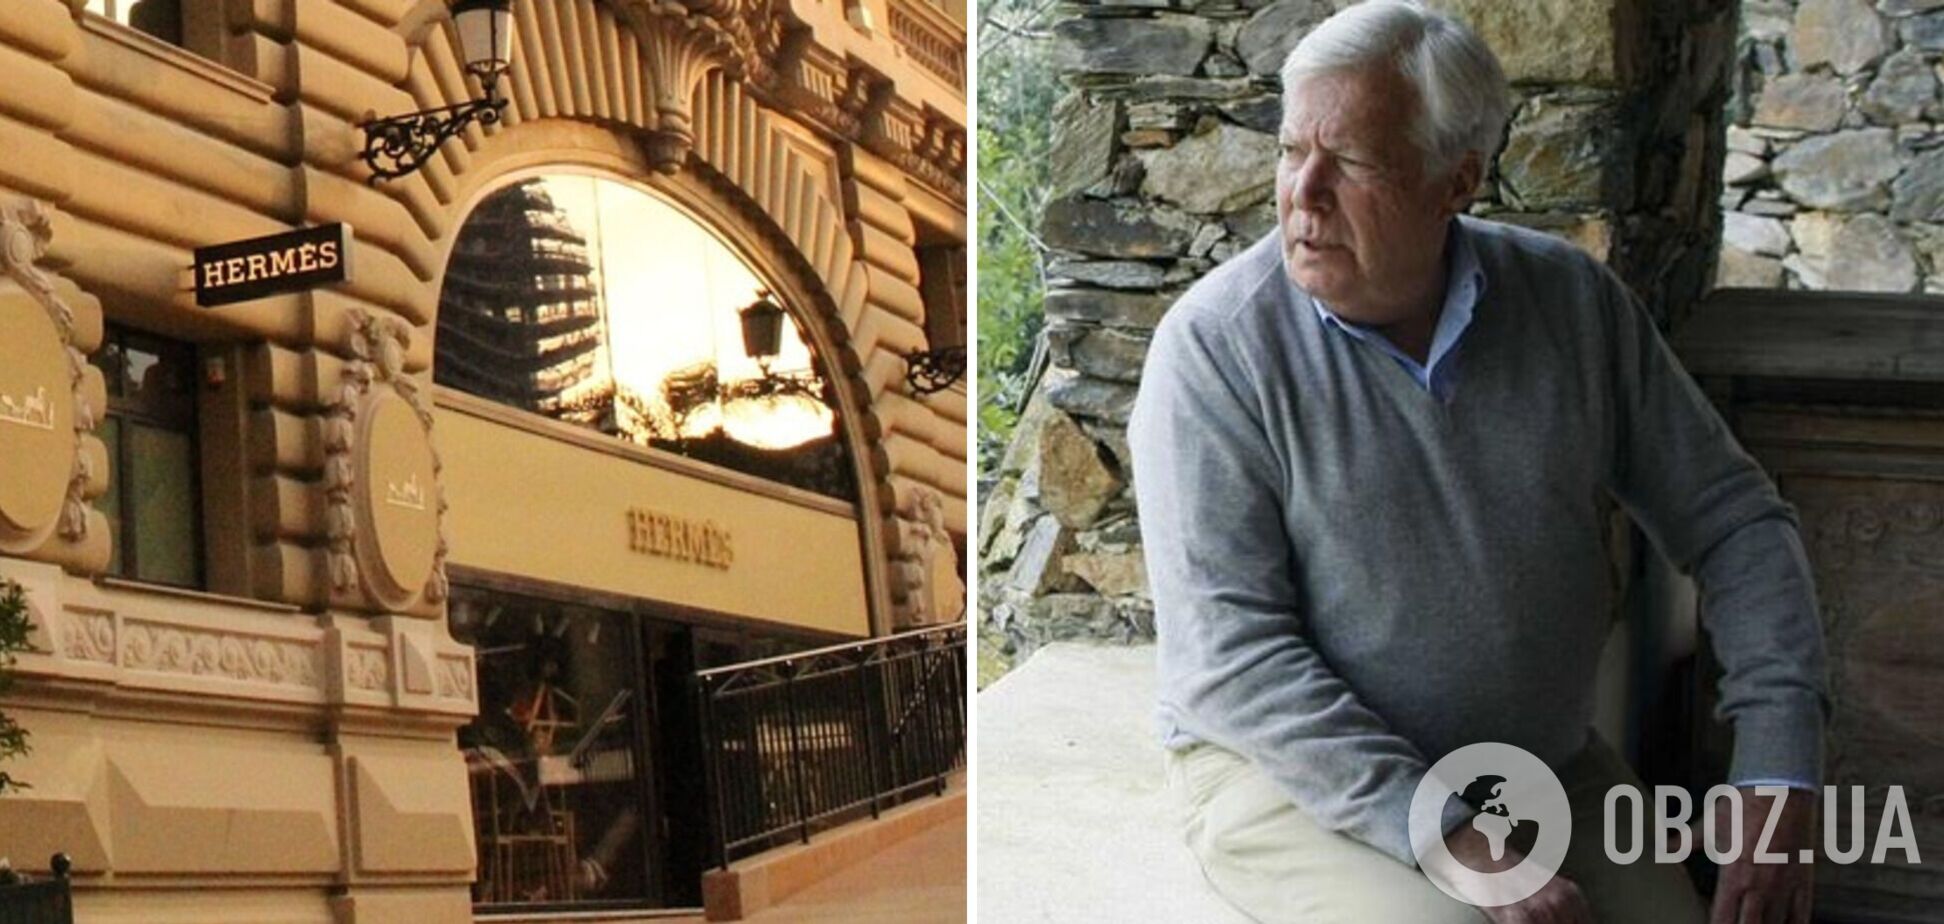 80-річний спадкоємець Hermès вирішив усиновити 51-річного садівника, щоб рідні та благодійники не отримали його мільярди